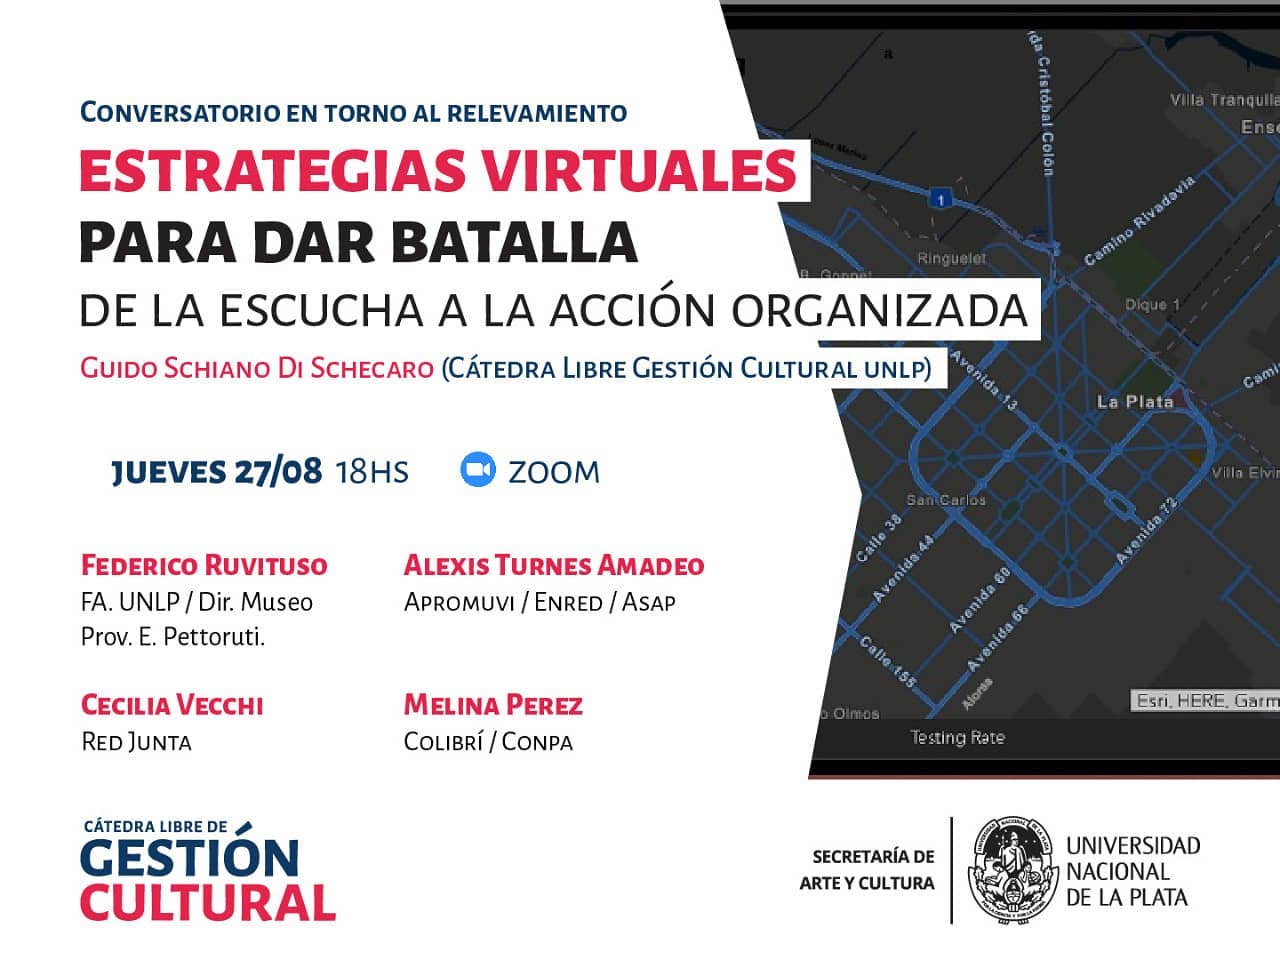 Flyer invitando al conversatorio "Estrategias virtuales para dar batalla"